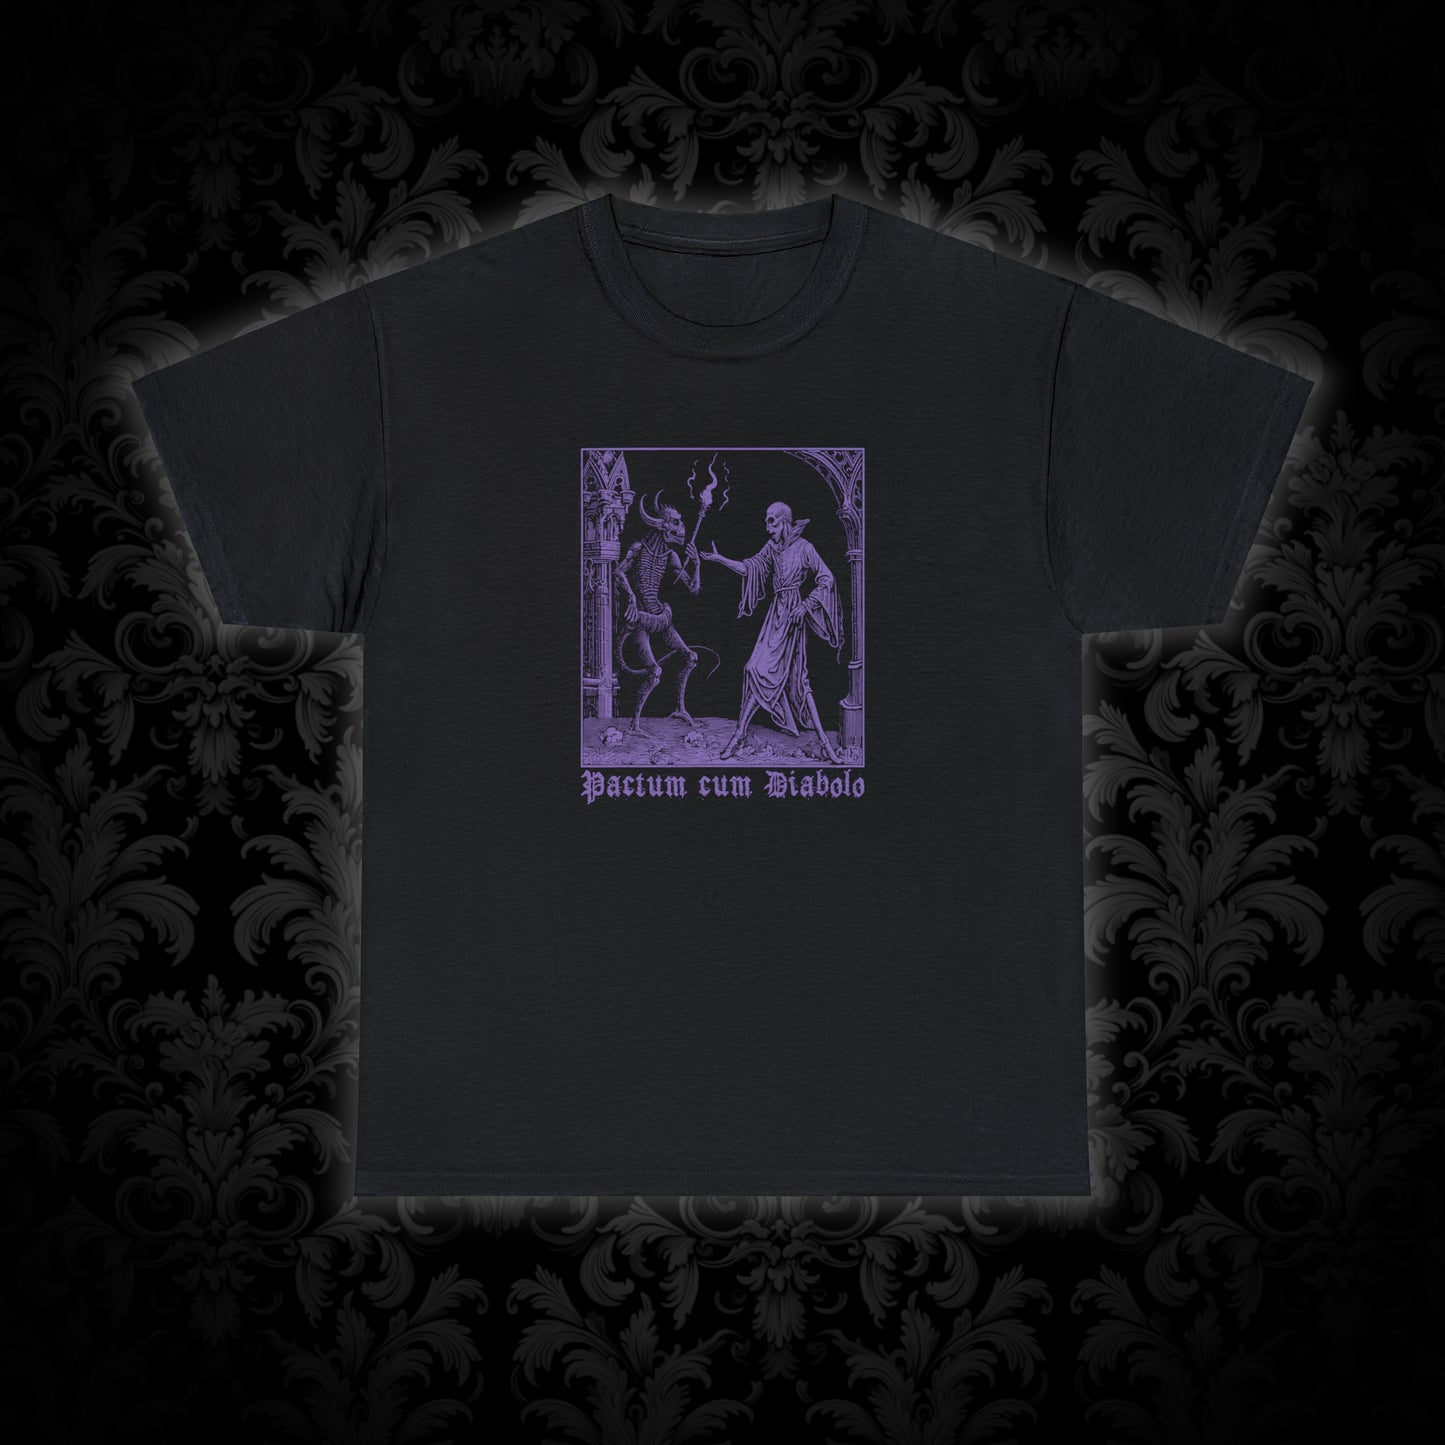 Unisex T-shirt Pactum cum Diabolo in Purple - Frogos Design